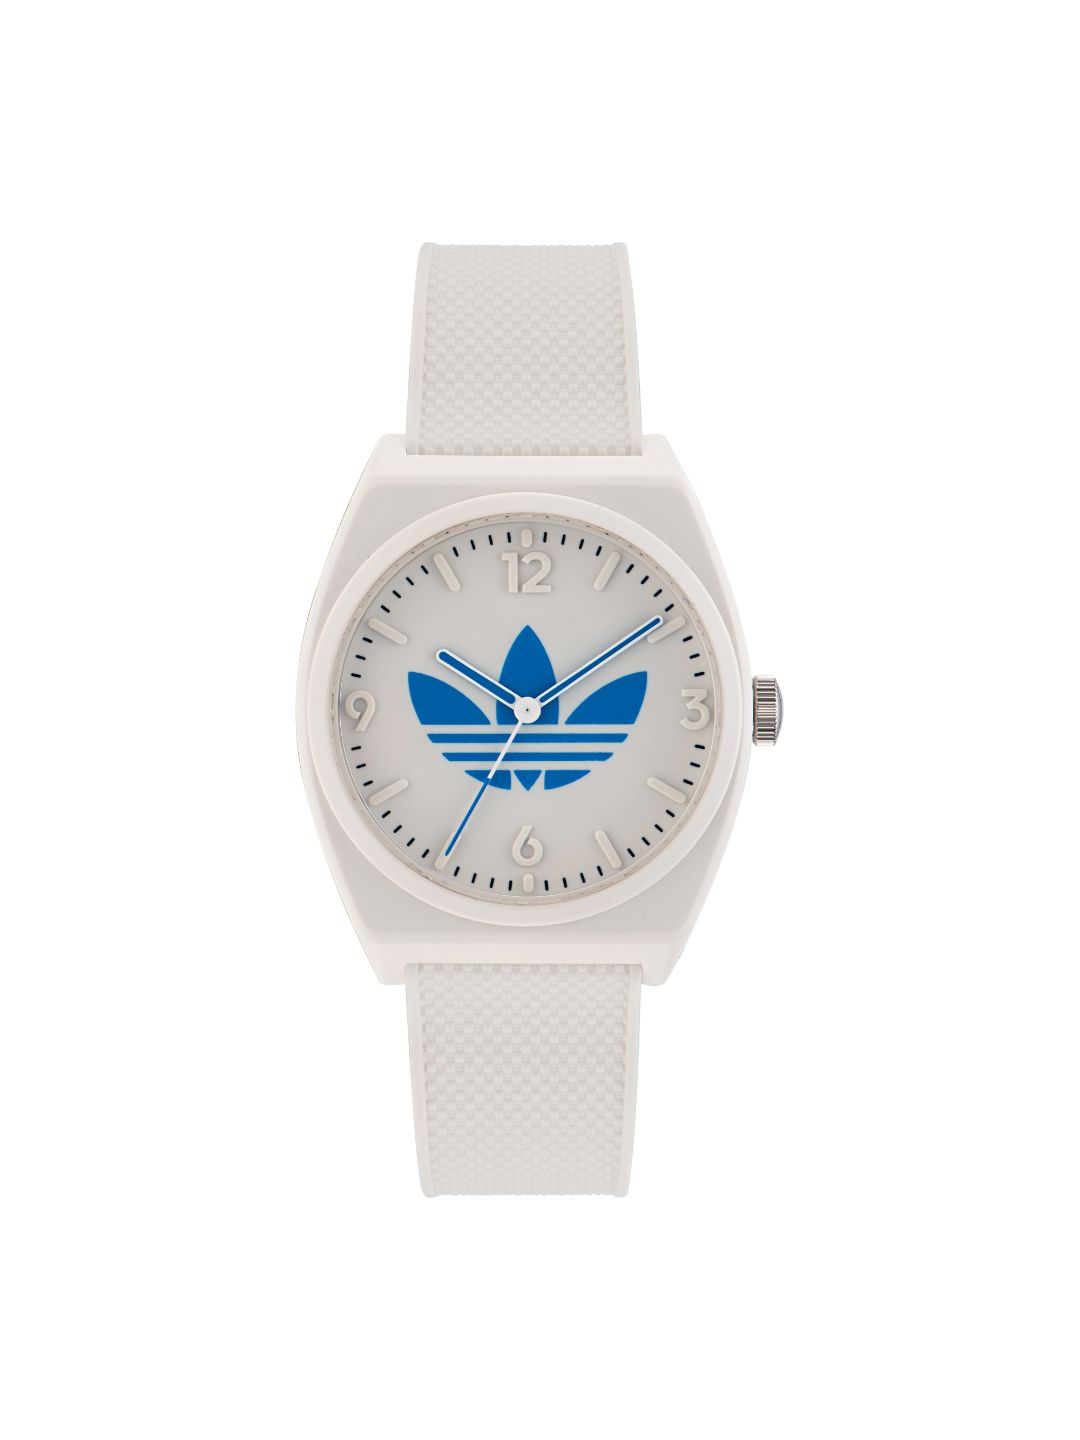 Adidas Originals White Dial Unisex Watch - AOST23048